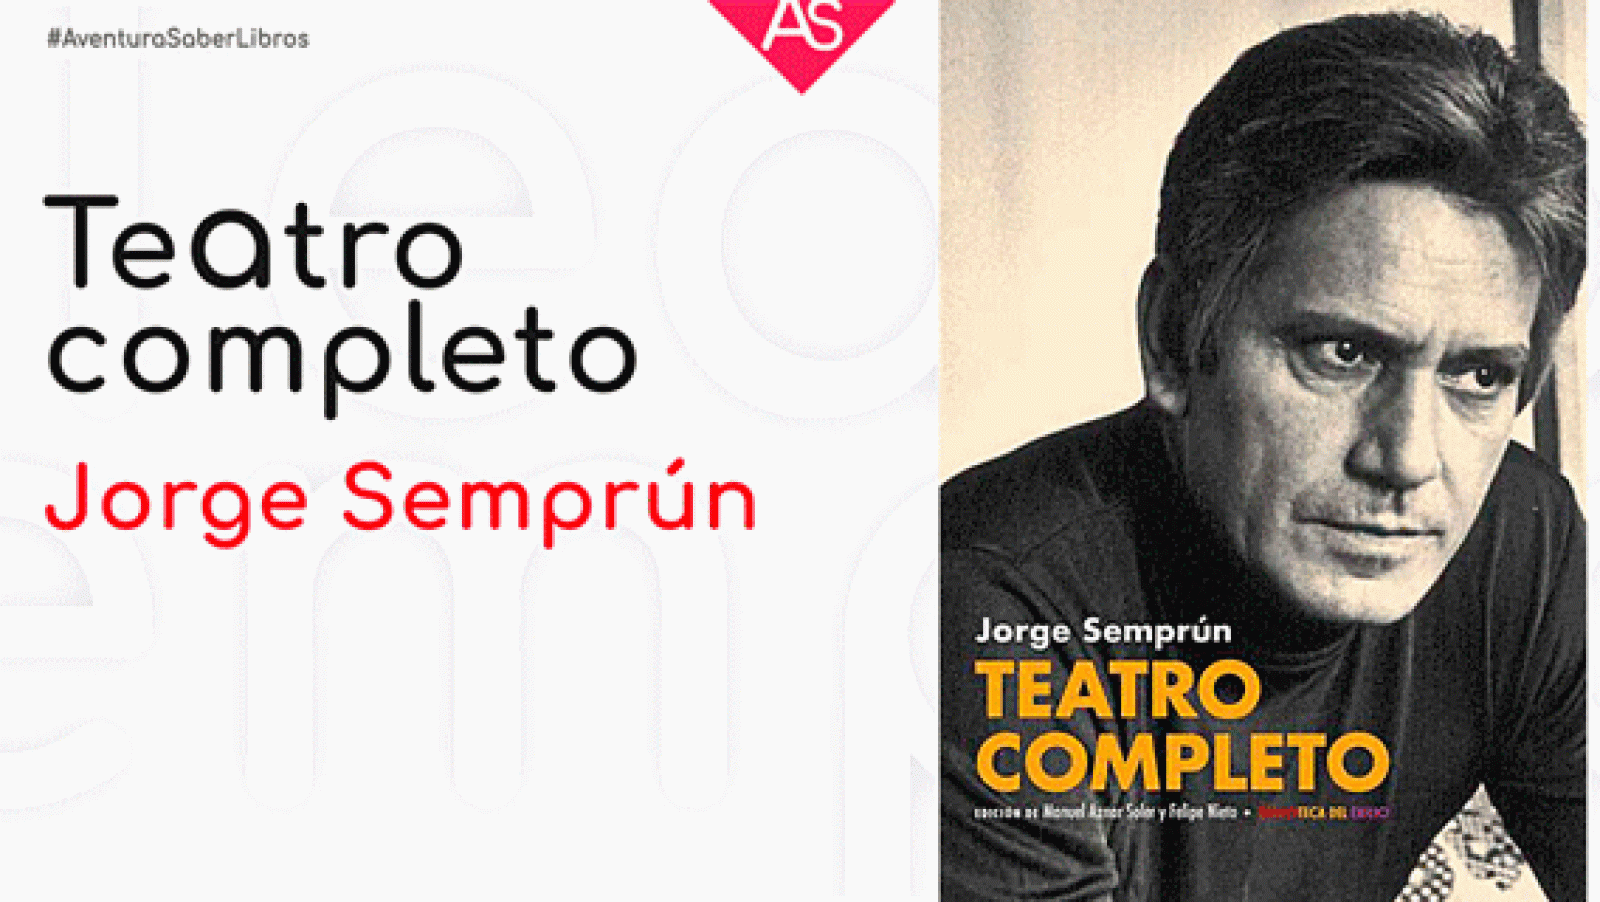 La aventura del saber - 'Teatro Completo' de Jorge Semprún